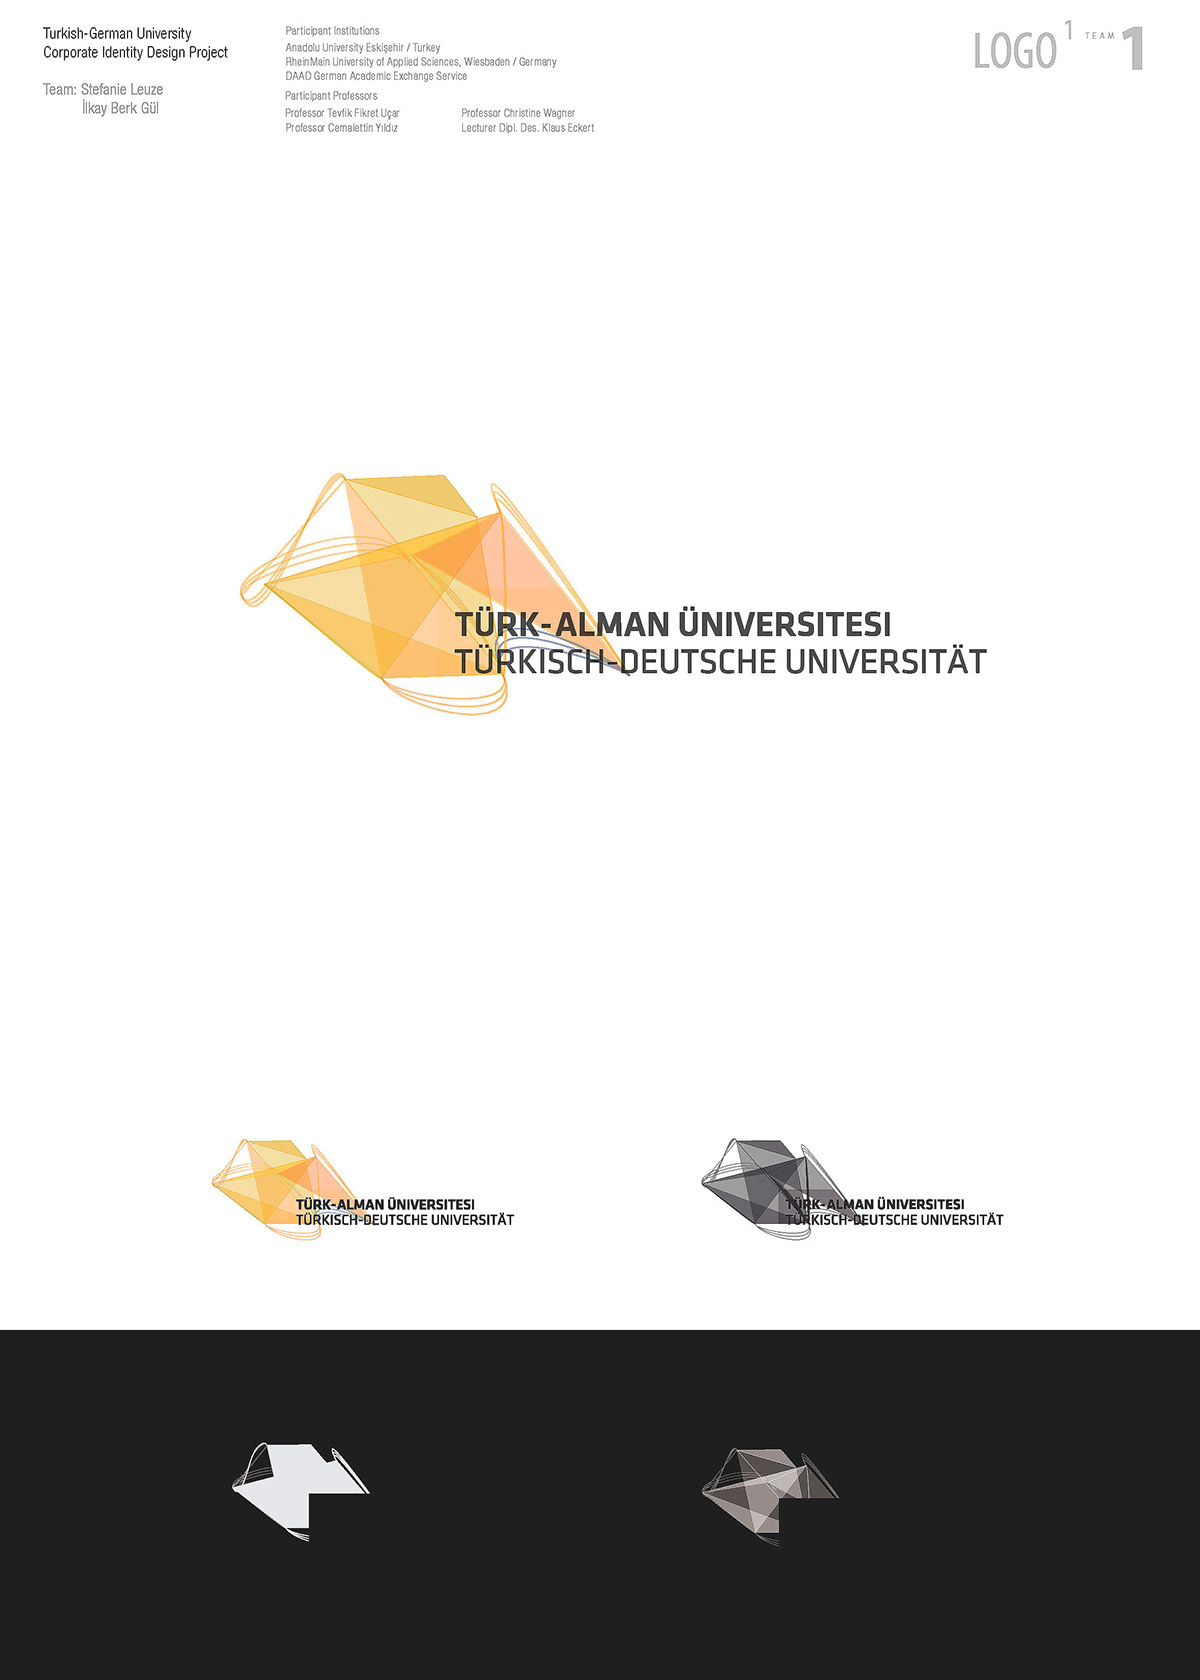 logo living University turkish german anadolu grafik